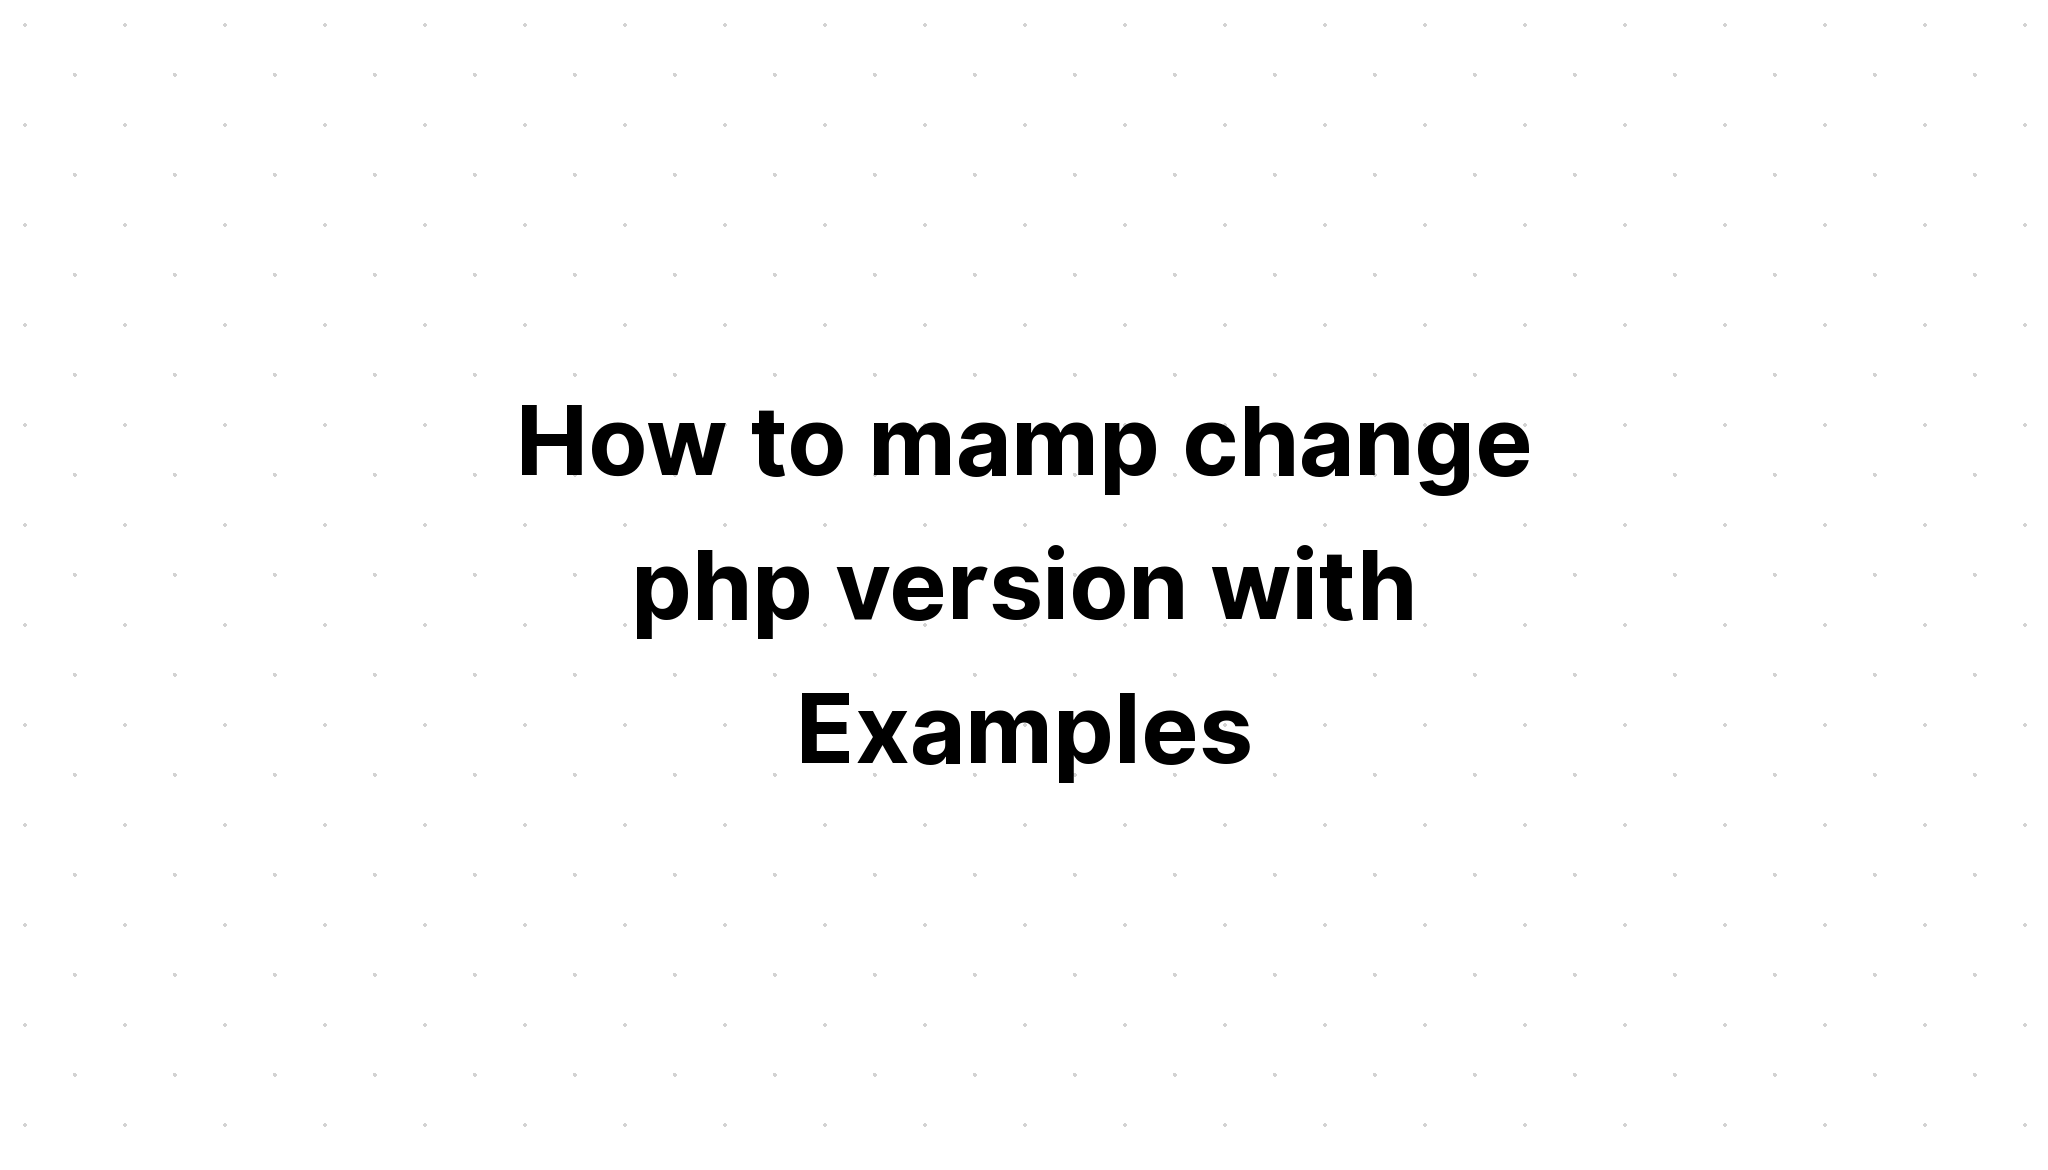 Cách mamp thay đổi phiên bản php với các ví dụ